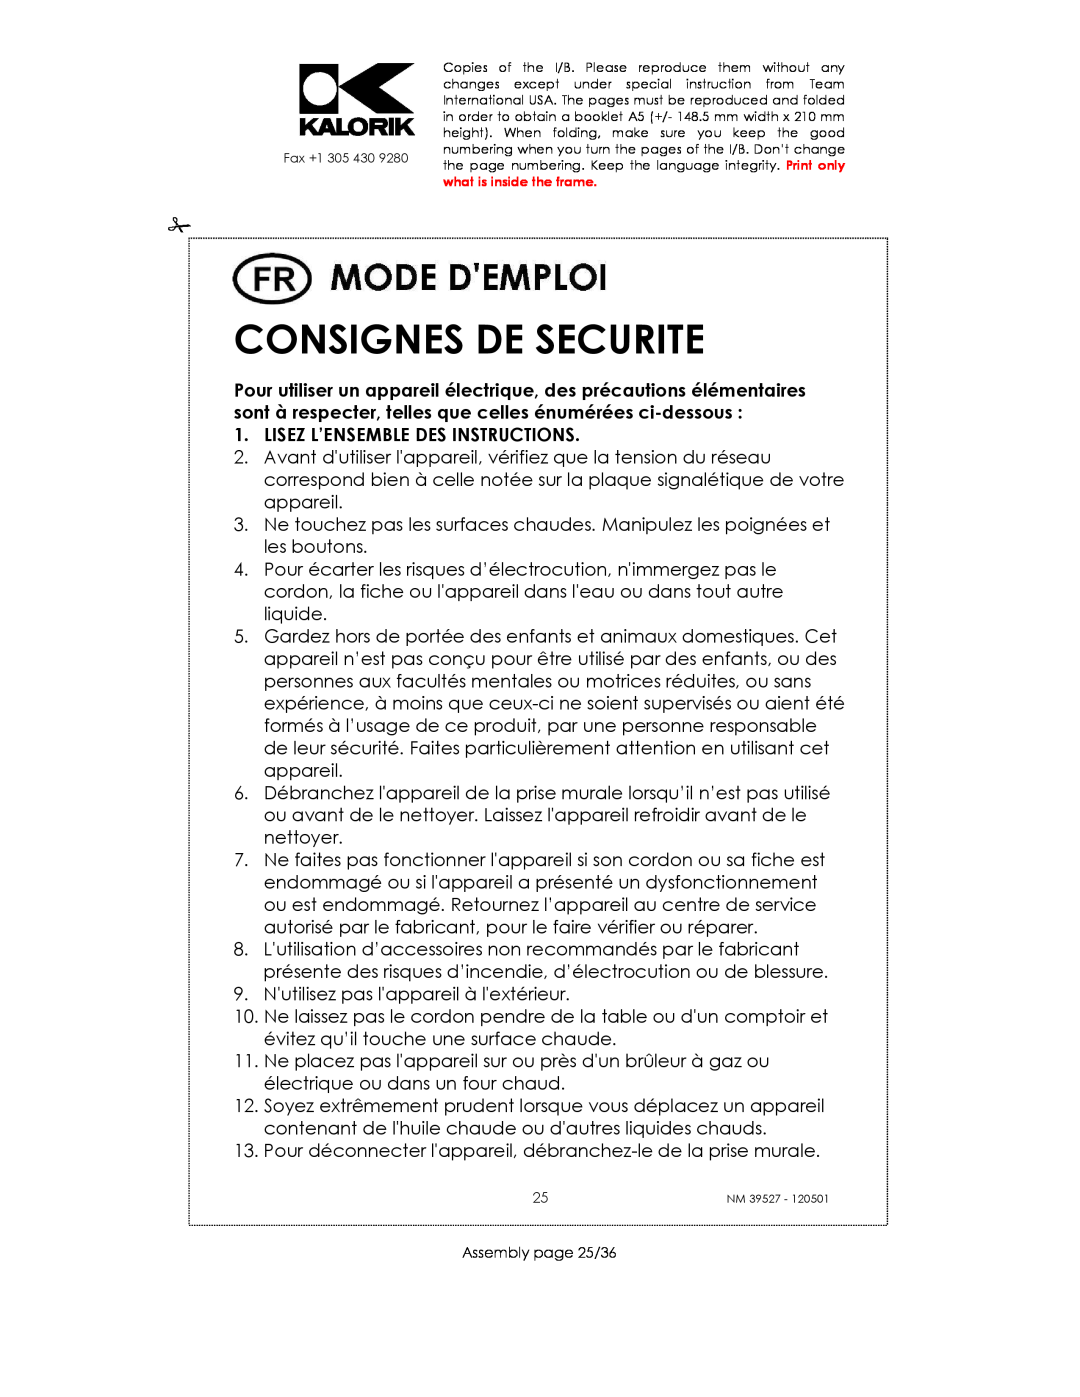 Kalorik NM 39527 manual Consignes De Securite, Lisez L’Ensemble Des Instructions 